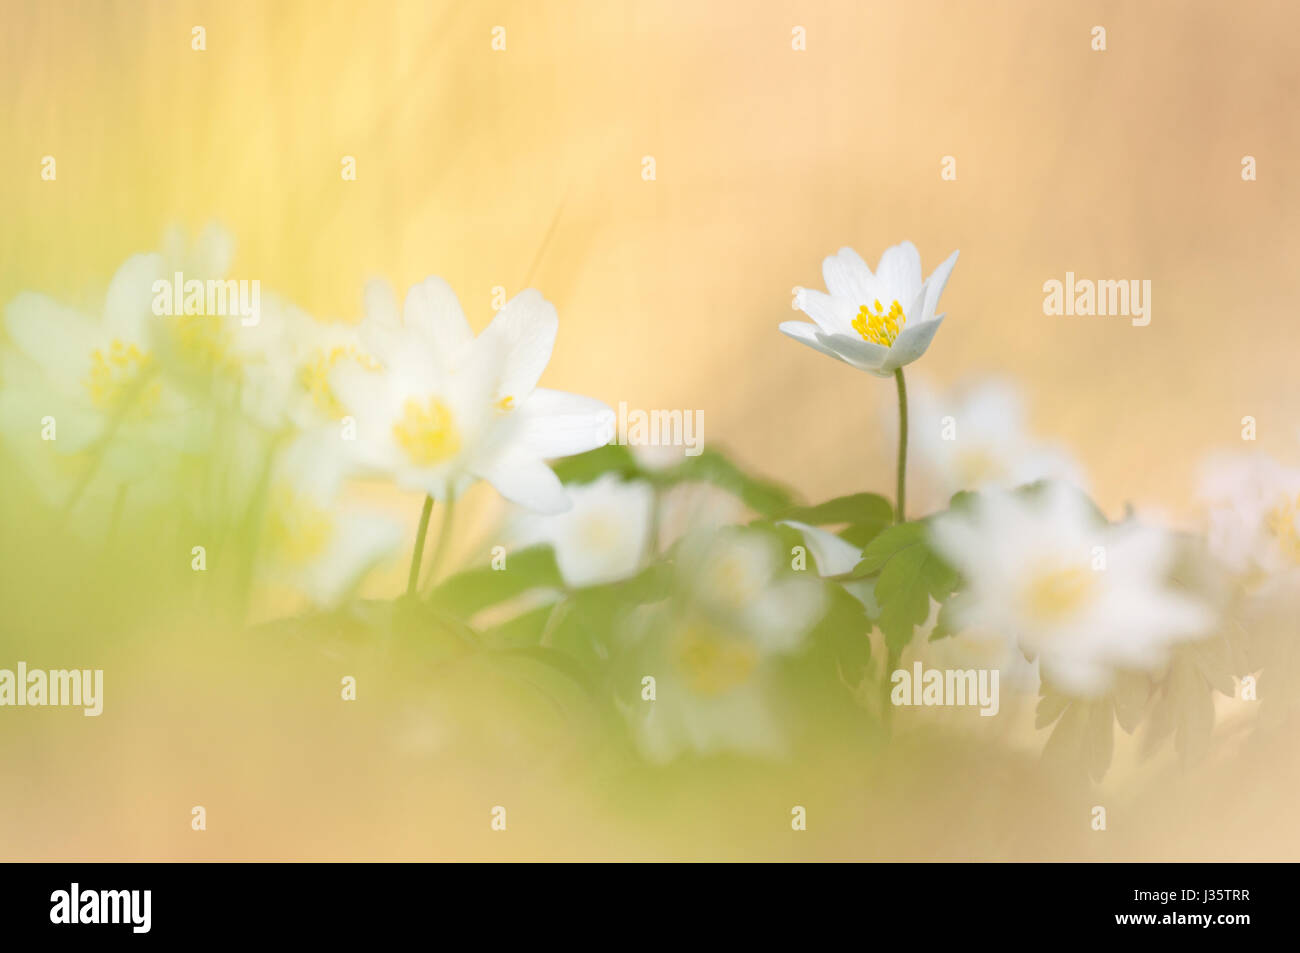 windflower, Anemone nemorosa Stock Photo